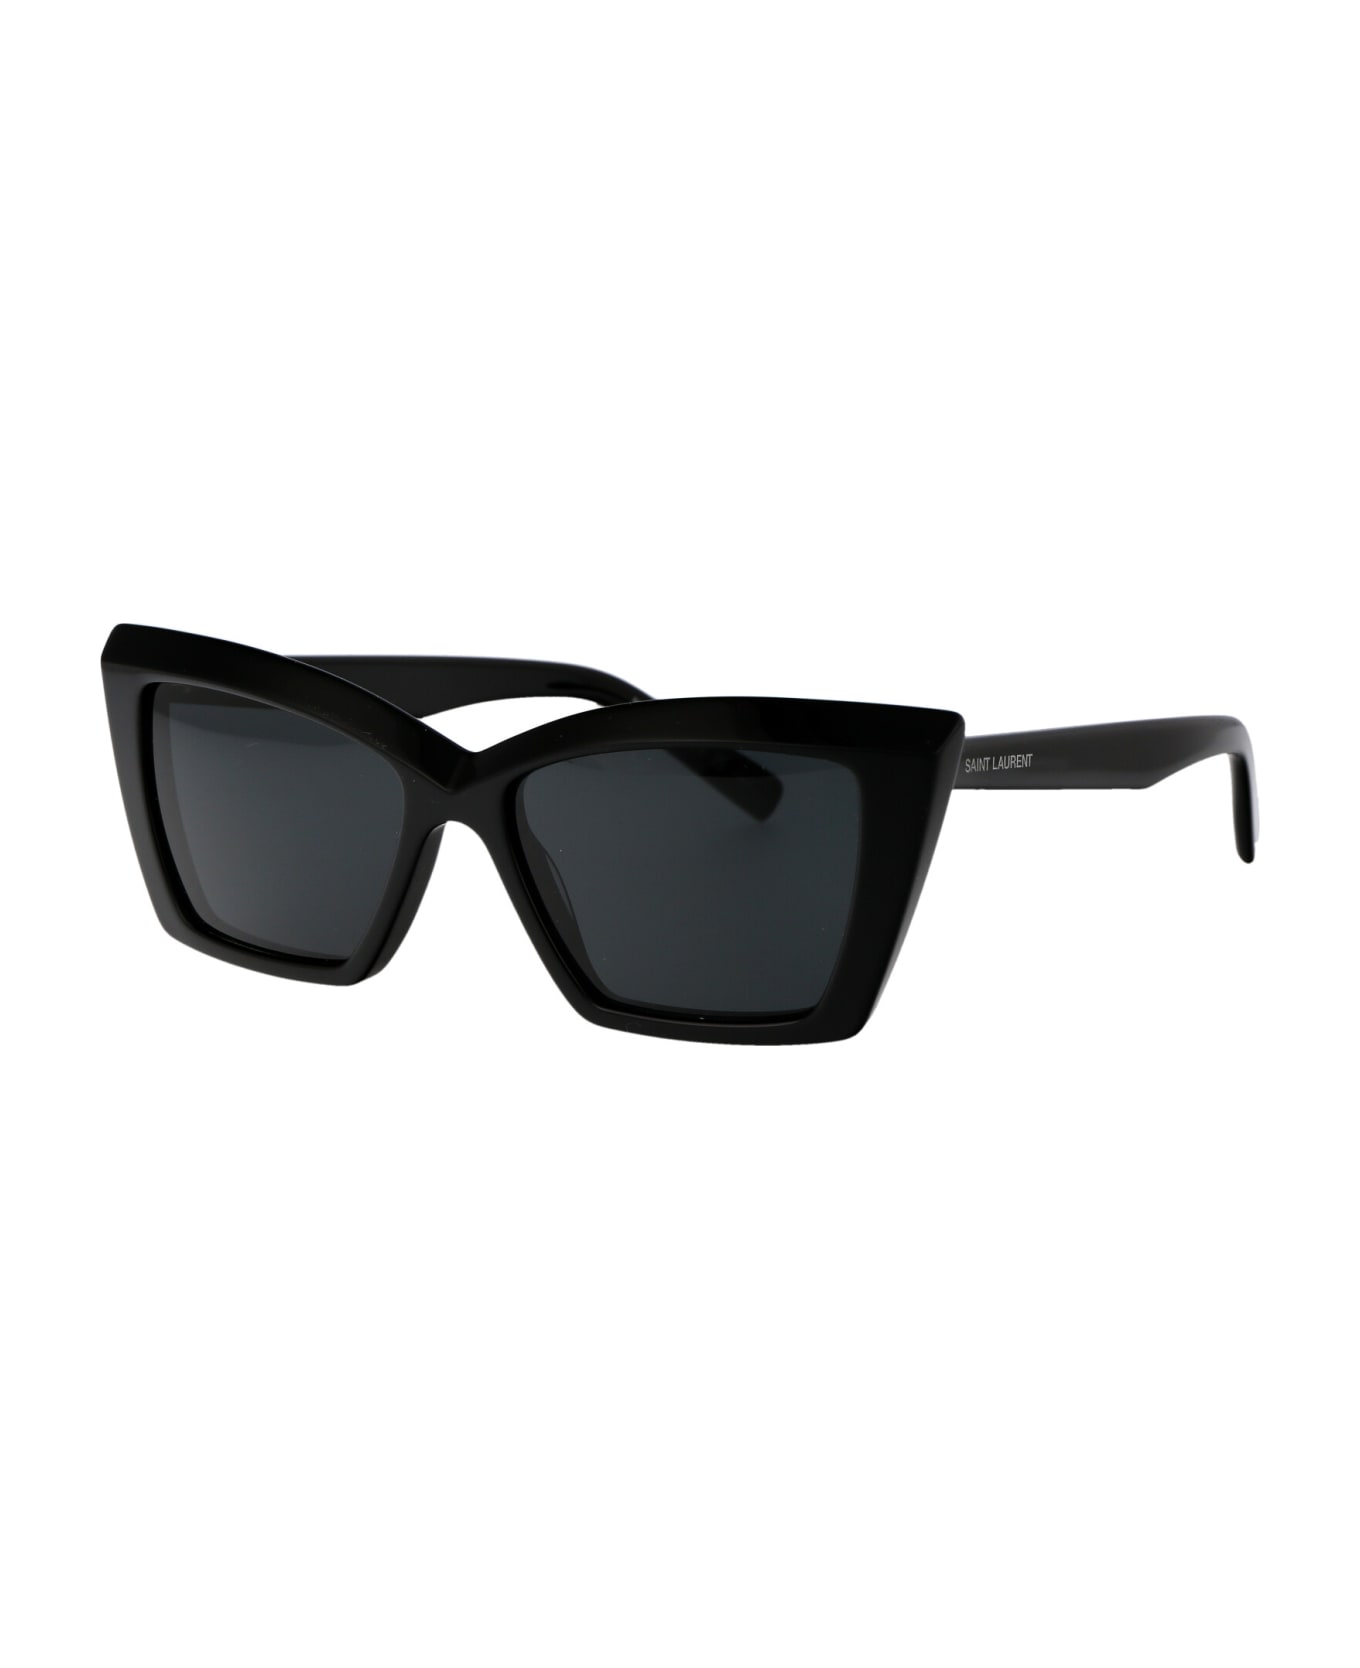 Saint Laurent Eyewear Sl 657 Sunglasses - 001 BLACK BLACK BLACK サングラス